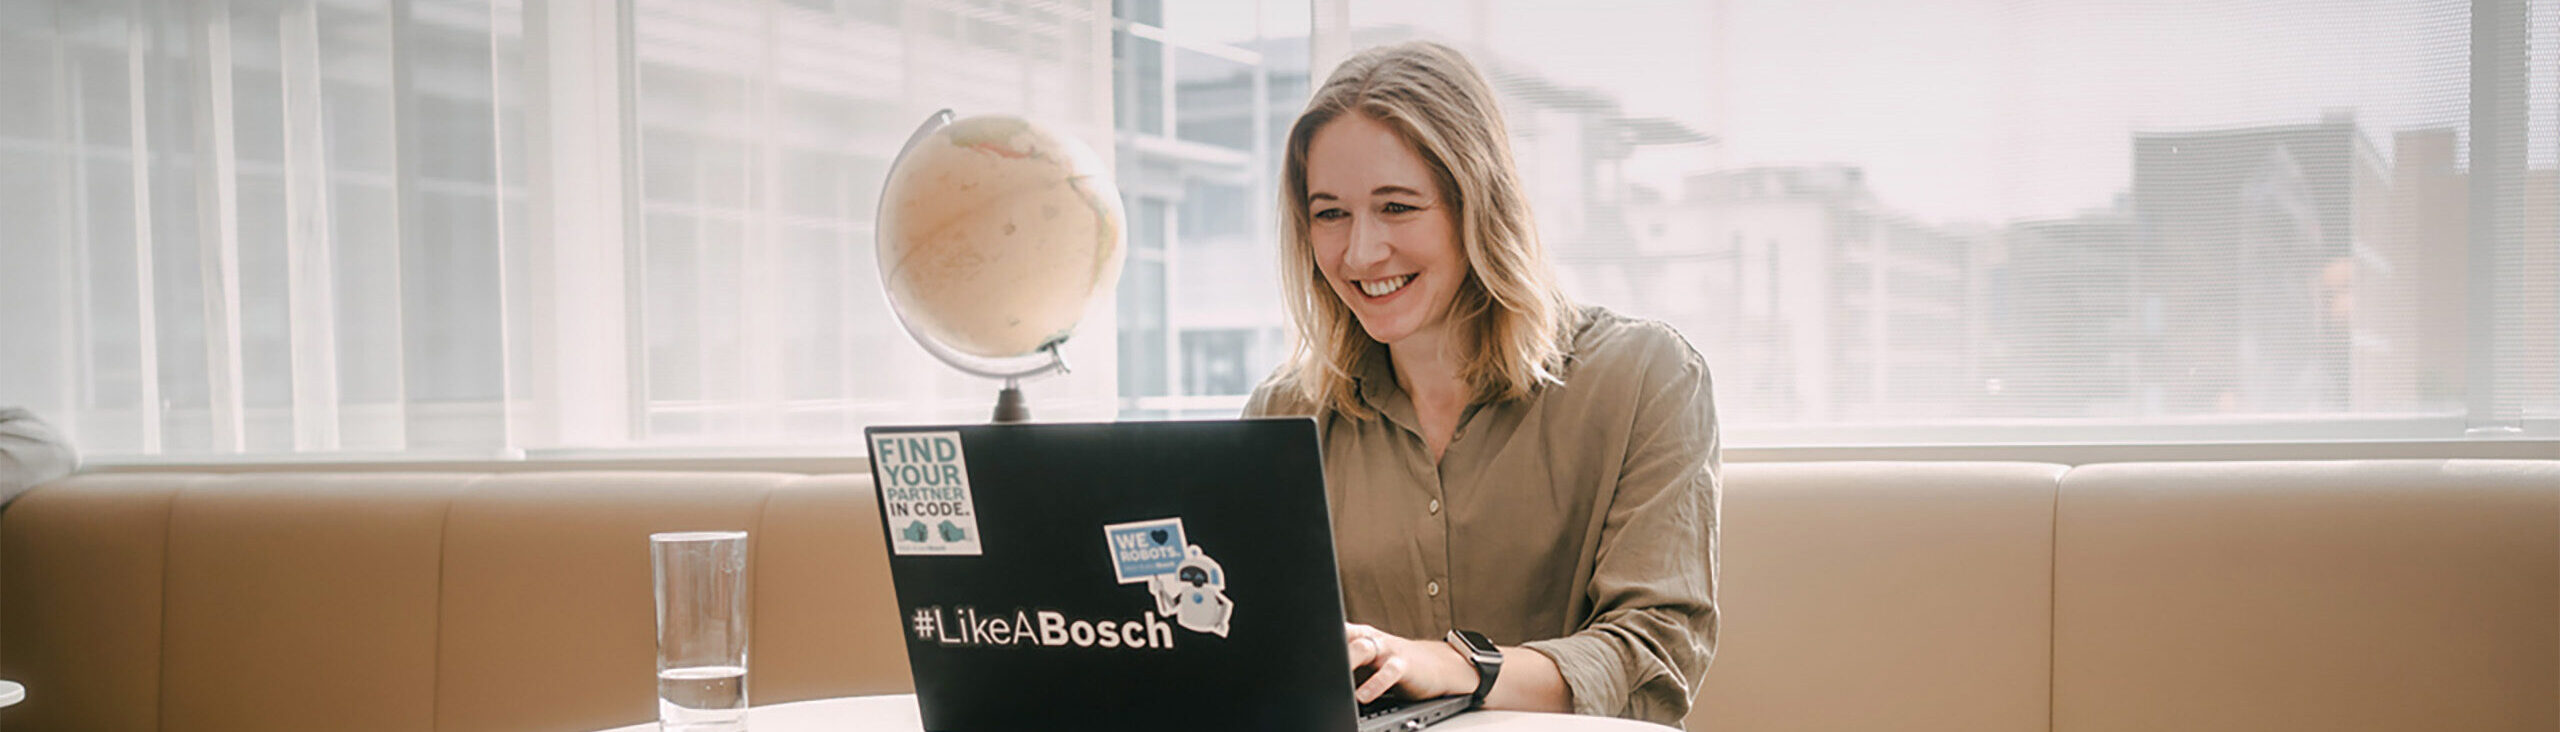 Junge Frau sitzt vor Laptop und schaut auf dessen Bildschirm. Auf dem Laptop sind diverse Sticker zu finden von Bosch. Im Hintergrund ist ein Globus zu sehen und außerhalb des Raumes ein Firmengebäude zu erkennen.